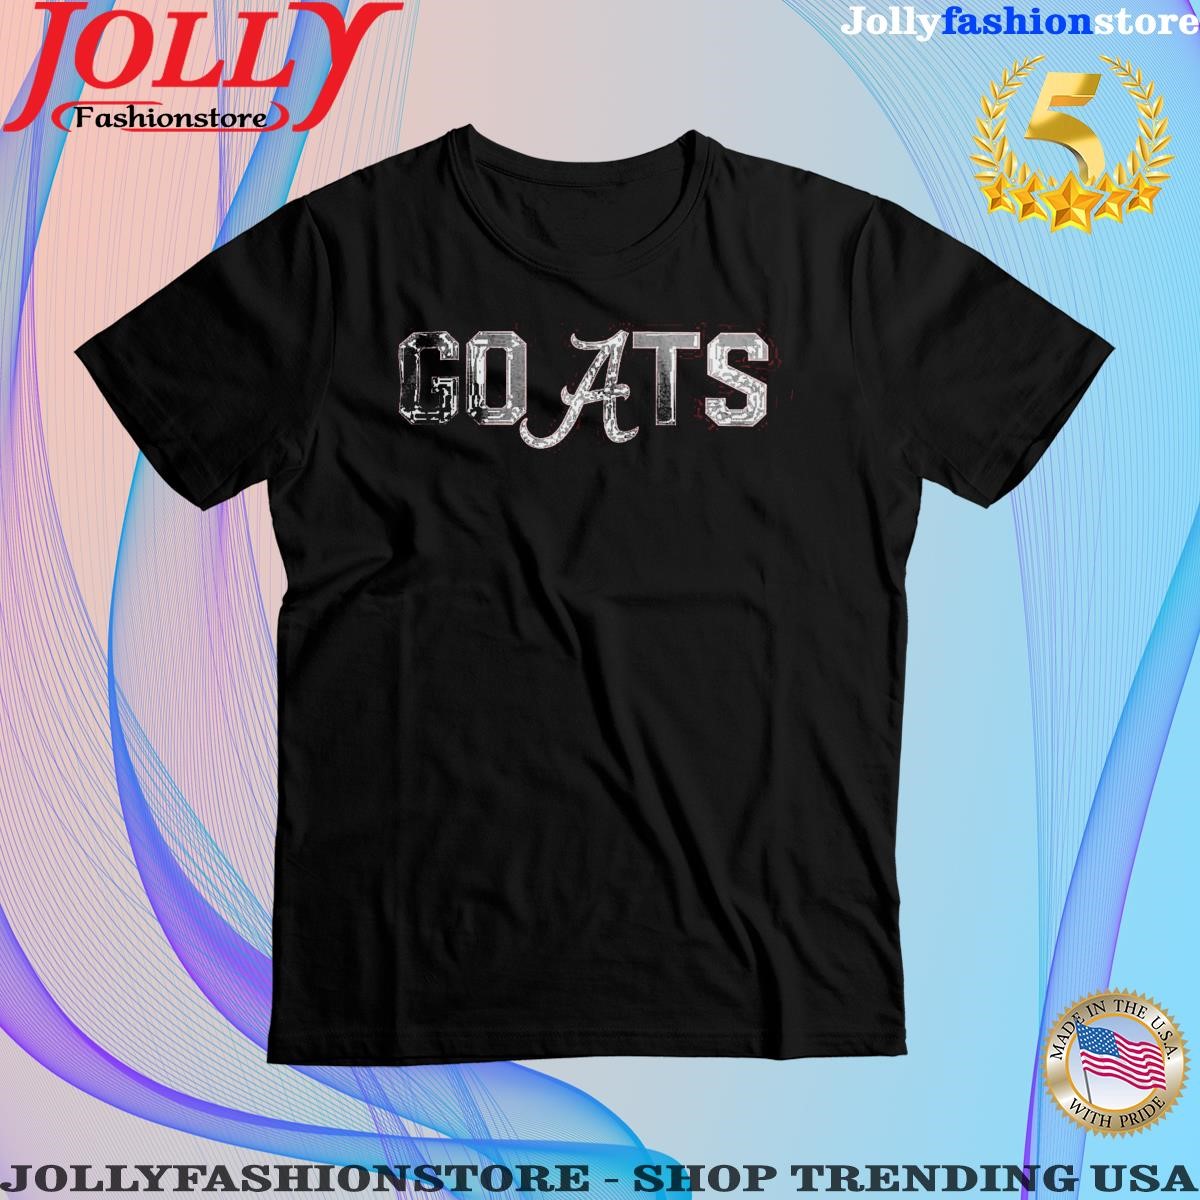 John talty Alabama goats shirt